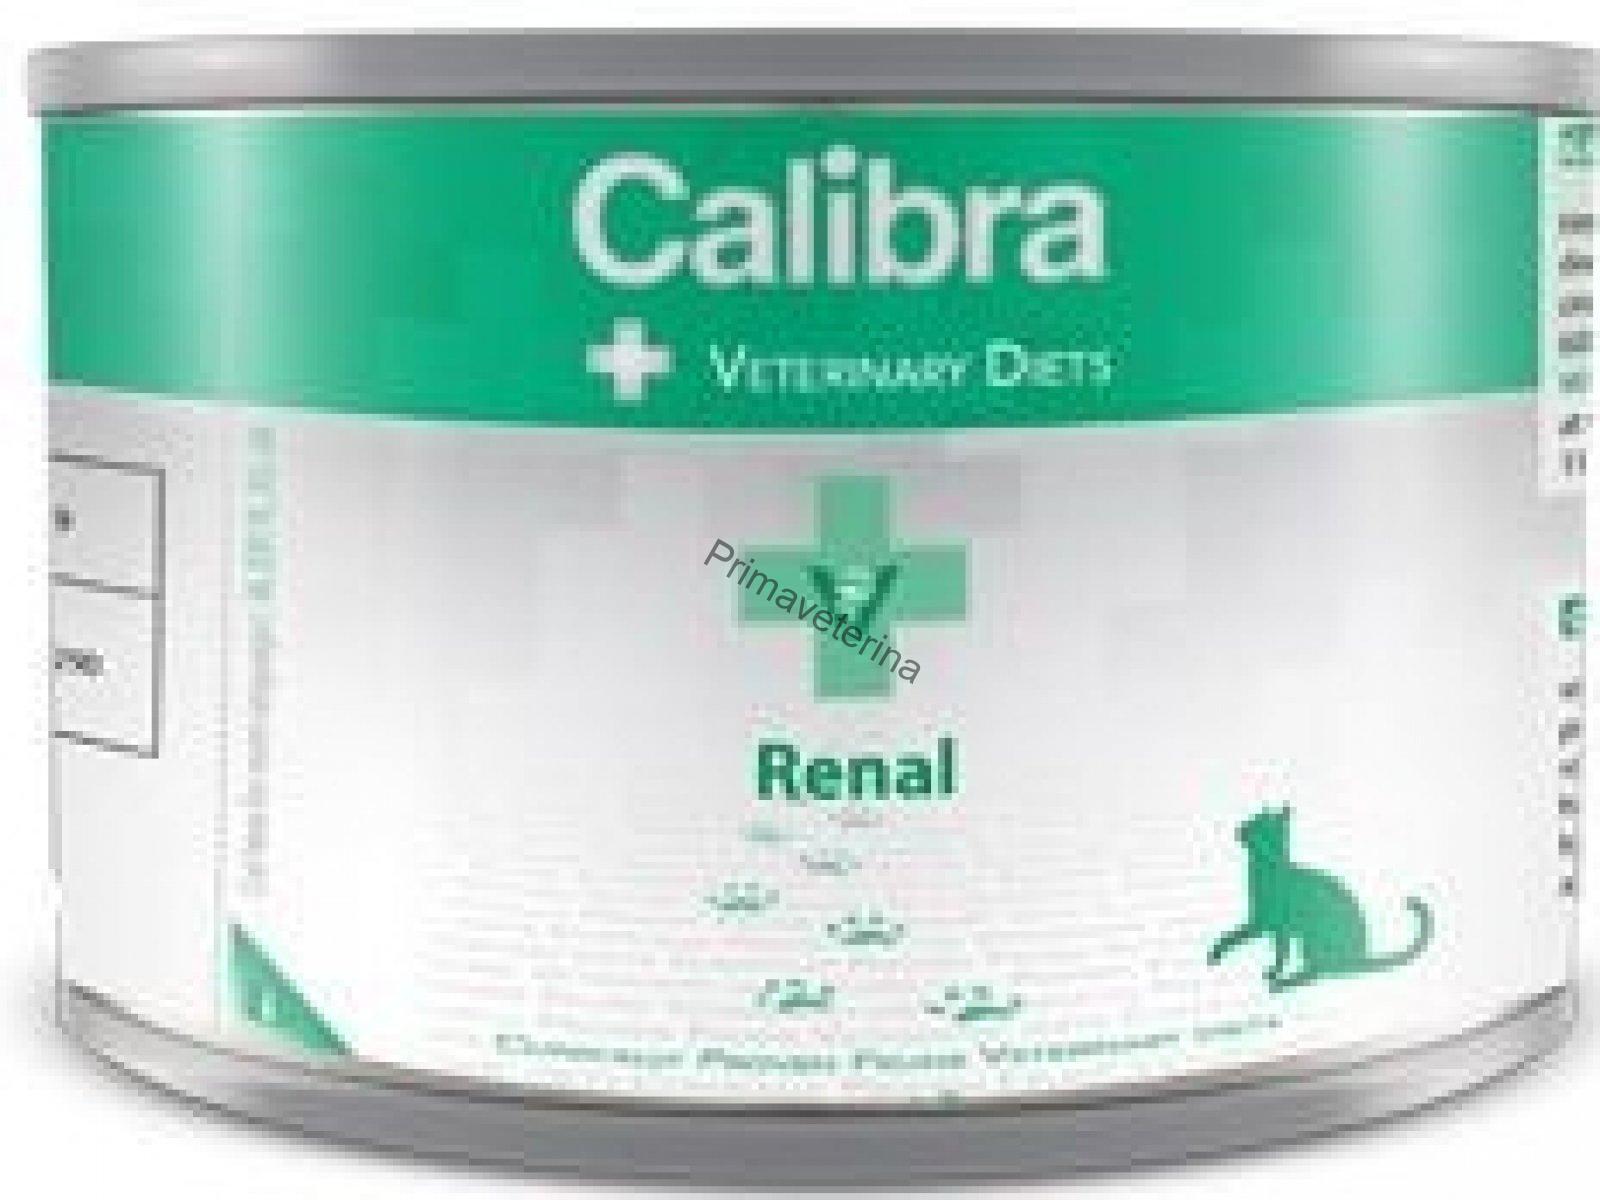 Calibra VD Cat Renal 200 g